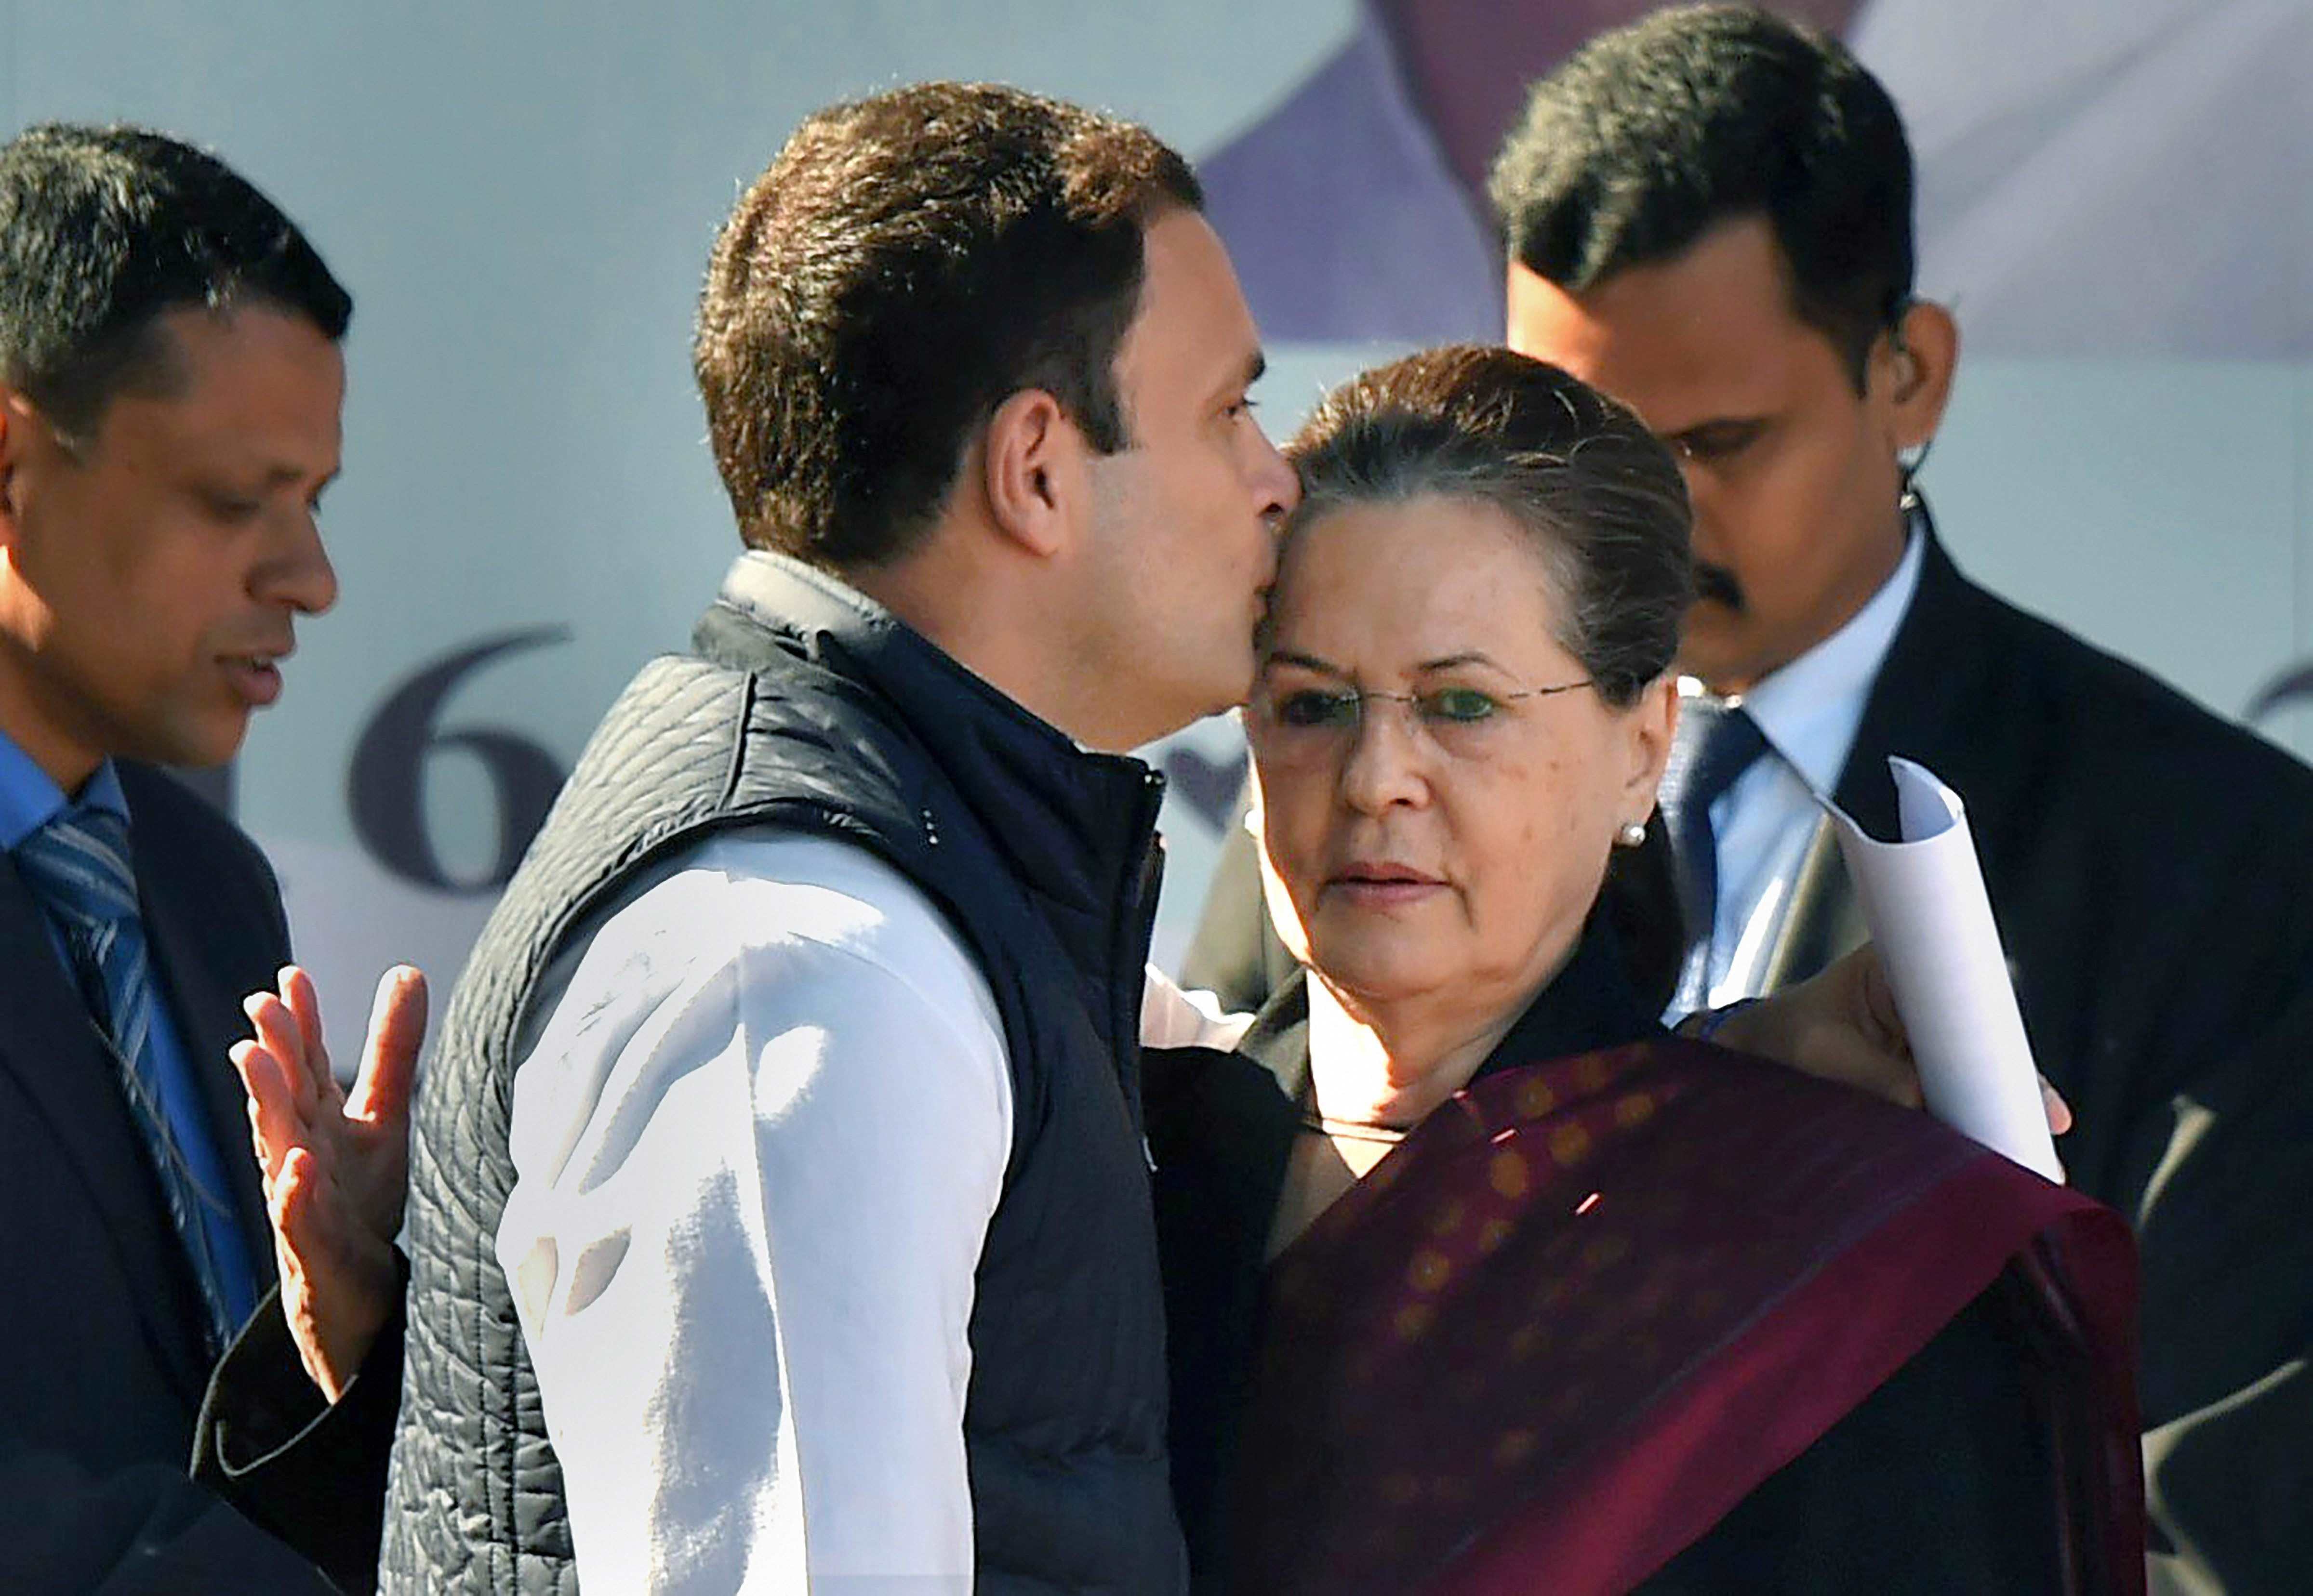 नए कांग्रेस अध्यक्ष राहुल गांधी ने मां का चूमा माथा, देखिए यादगार तस्वीरें